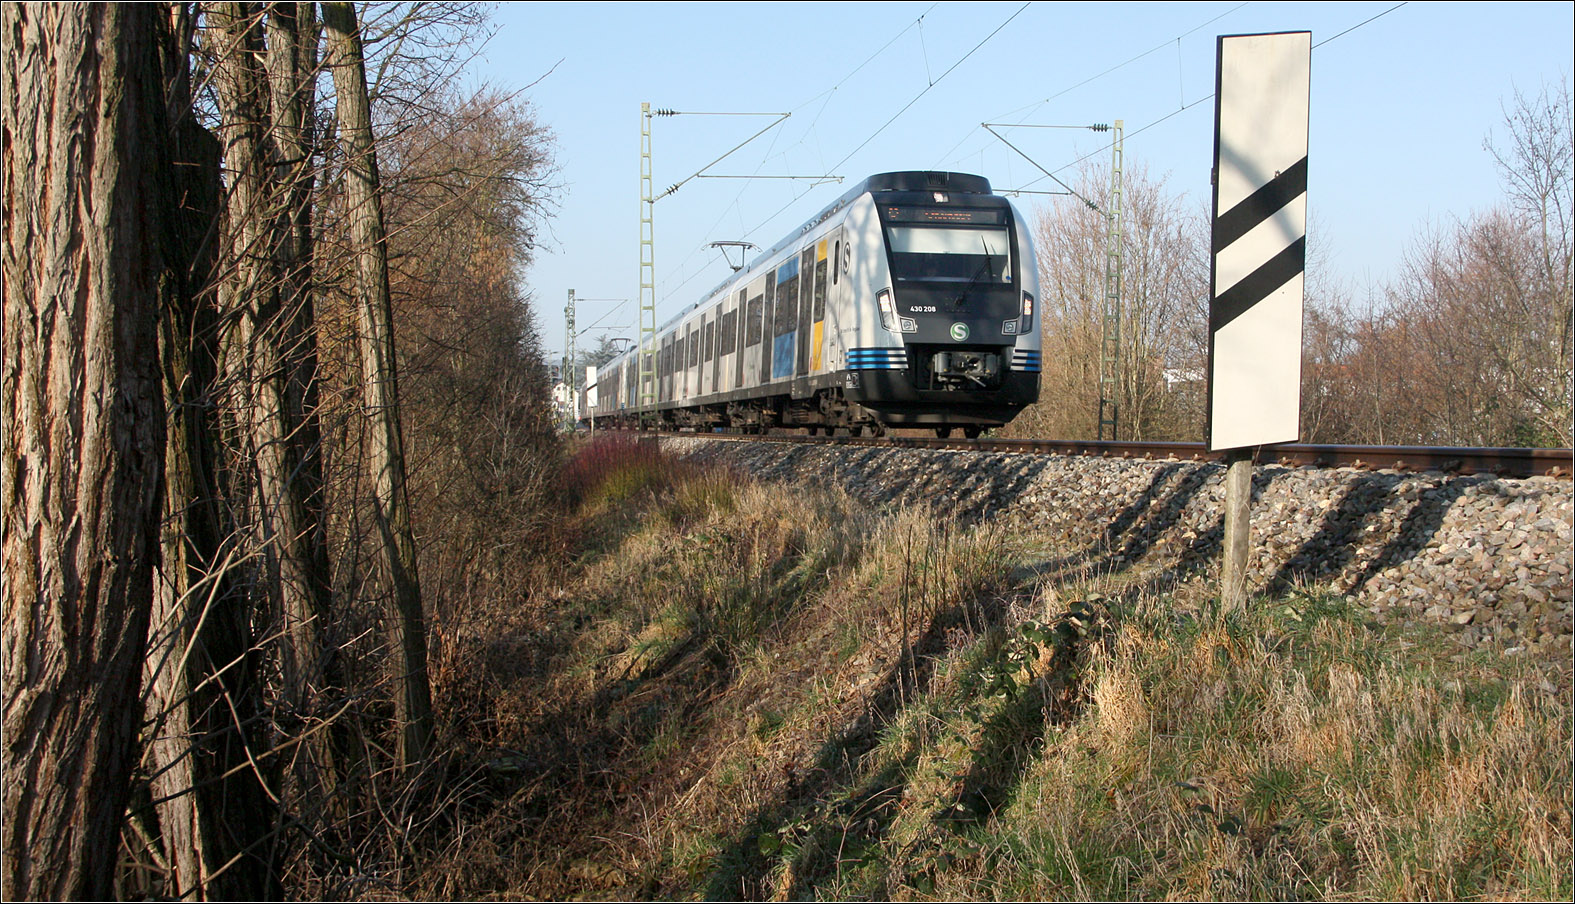 Der Gegenzug - 

Ein weitere Vollzug mit Wagen der neuen Serie der Baureiche 430 quert kurze Zeit später die selbe Fotostelle in Richtung Schorndorf.

14.02.2023 (M)